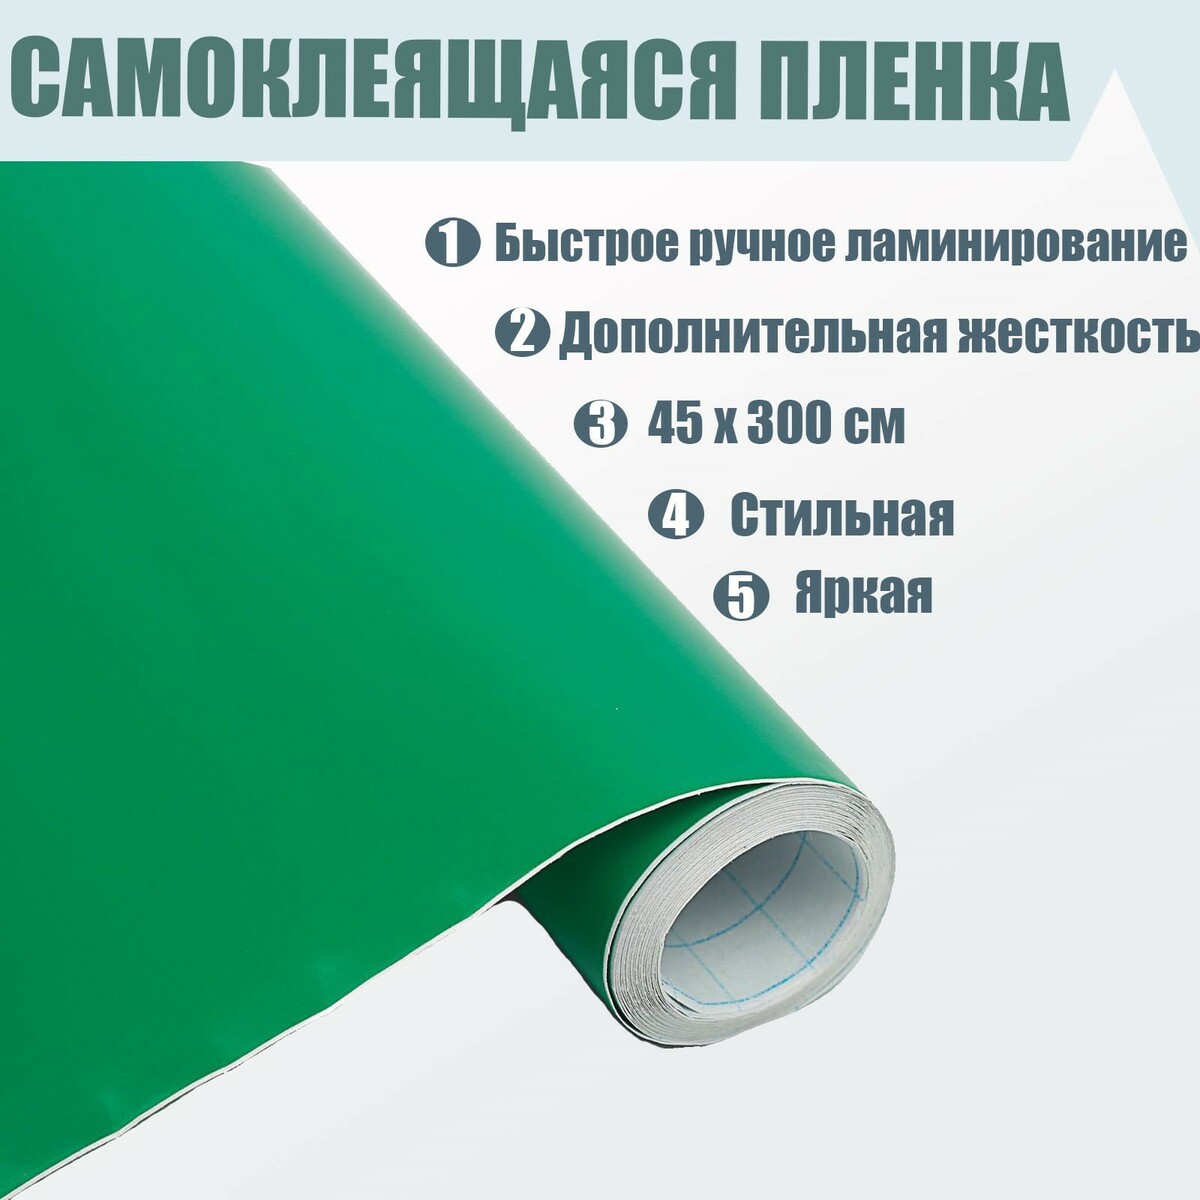 Пленка 80 мкм купить. Самоклейка пленка 80мкм. Пленка для оклейки термоусадочная пнл-5х1 (1м2, длина~3м) 1437495. Озон купить самоклеящую пленку зеленого оттенка. Самоклеющася пленка купить в Украине.